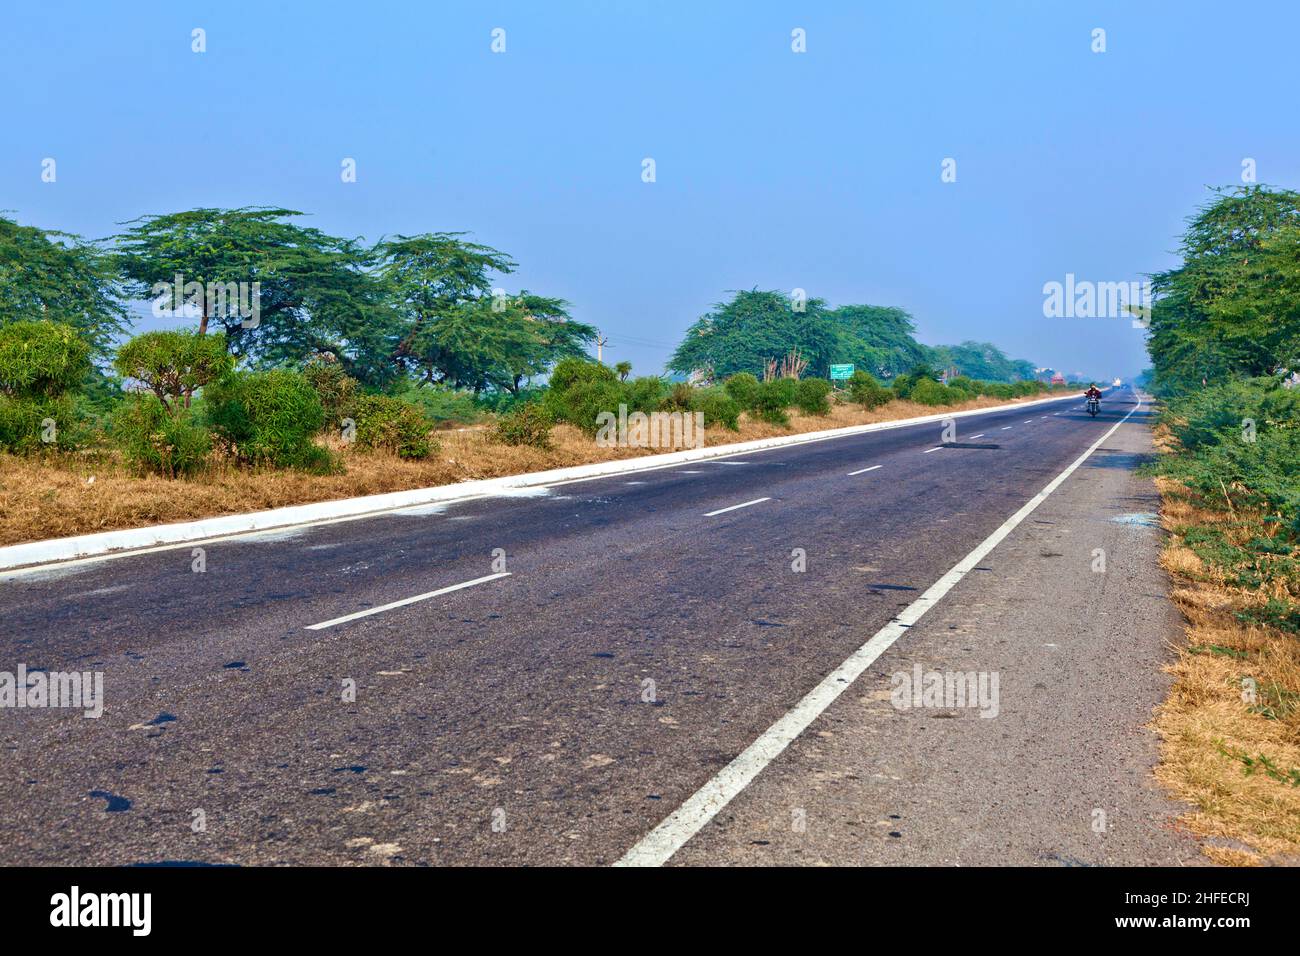 Autoroute près d'Agra, Inde.NH2, une autoroute moderne divisée, relie la distance de 200 km de Delhi à Agra. Banque D'Images